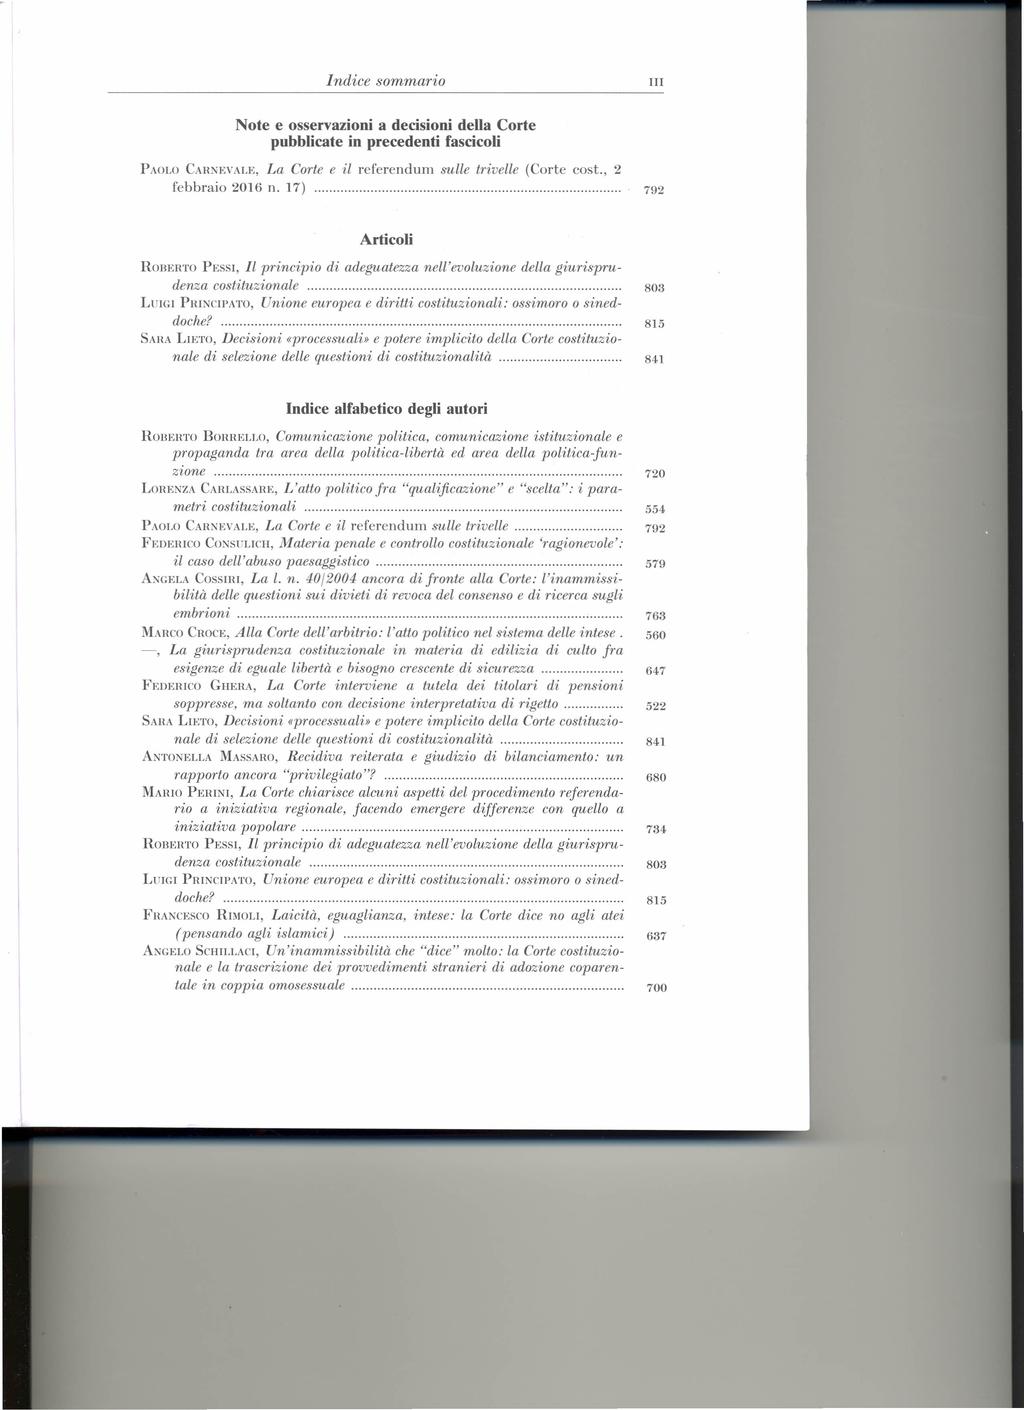 Indice sommario III Note e osservazioni a decisioni della Corte pubblicate in precedenti fascicoli PAOLO CARXEVALE, La Corte e il referendum sulle triuelle (Corte cost., 2 febbraio 2016 n.